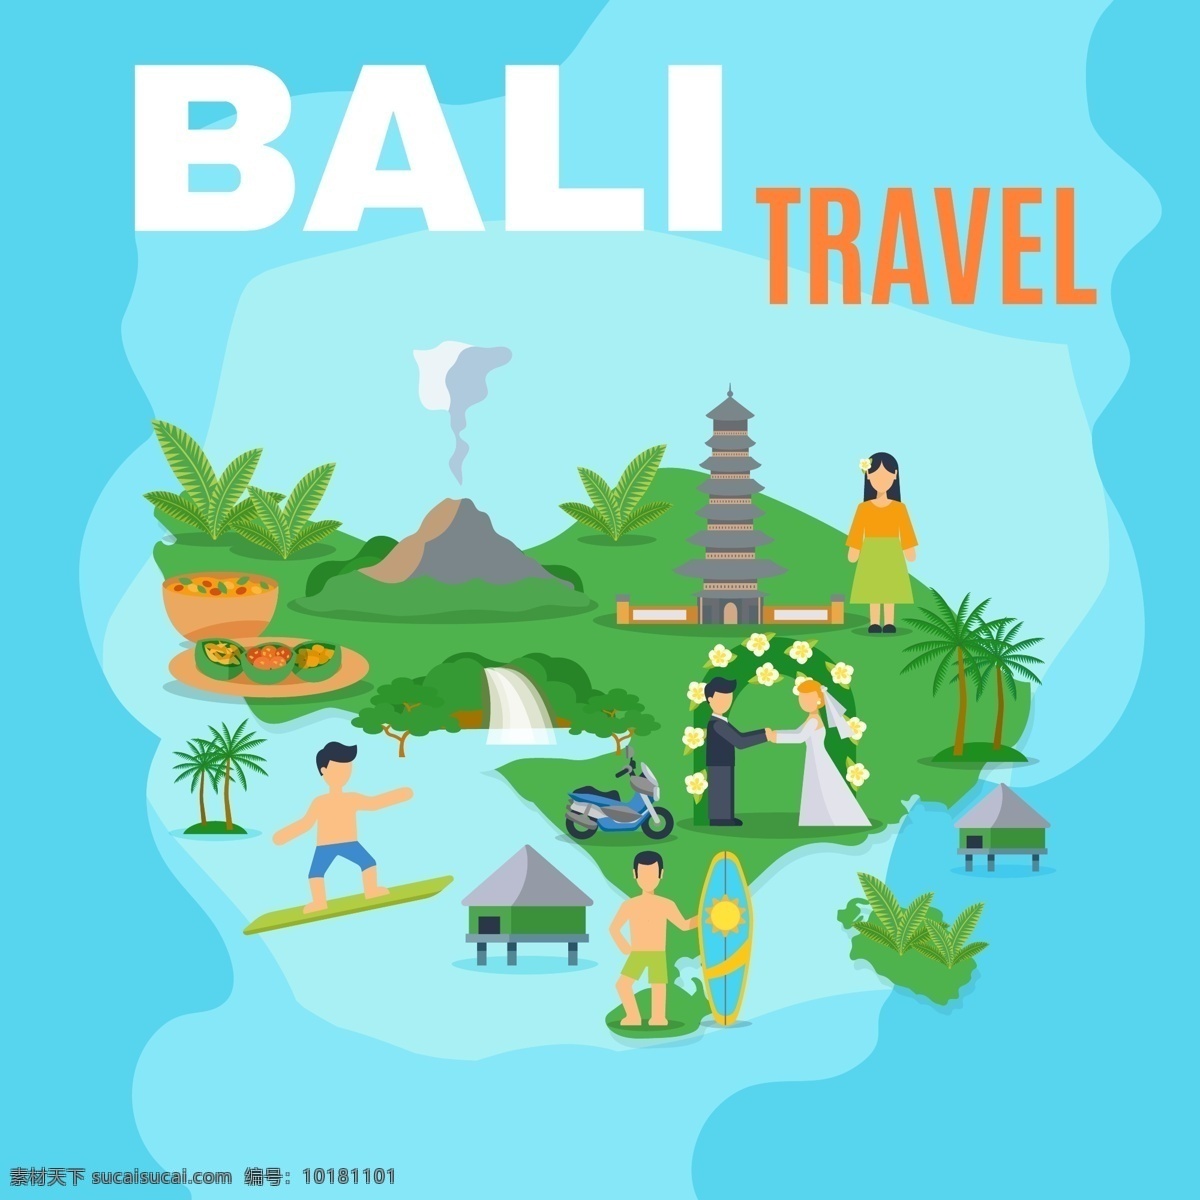 巴厘岛 特色 旅行 风景 插画 人物 美食 建筑 海岛 夏天